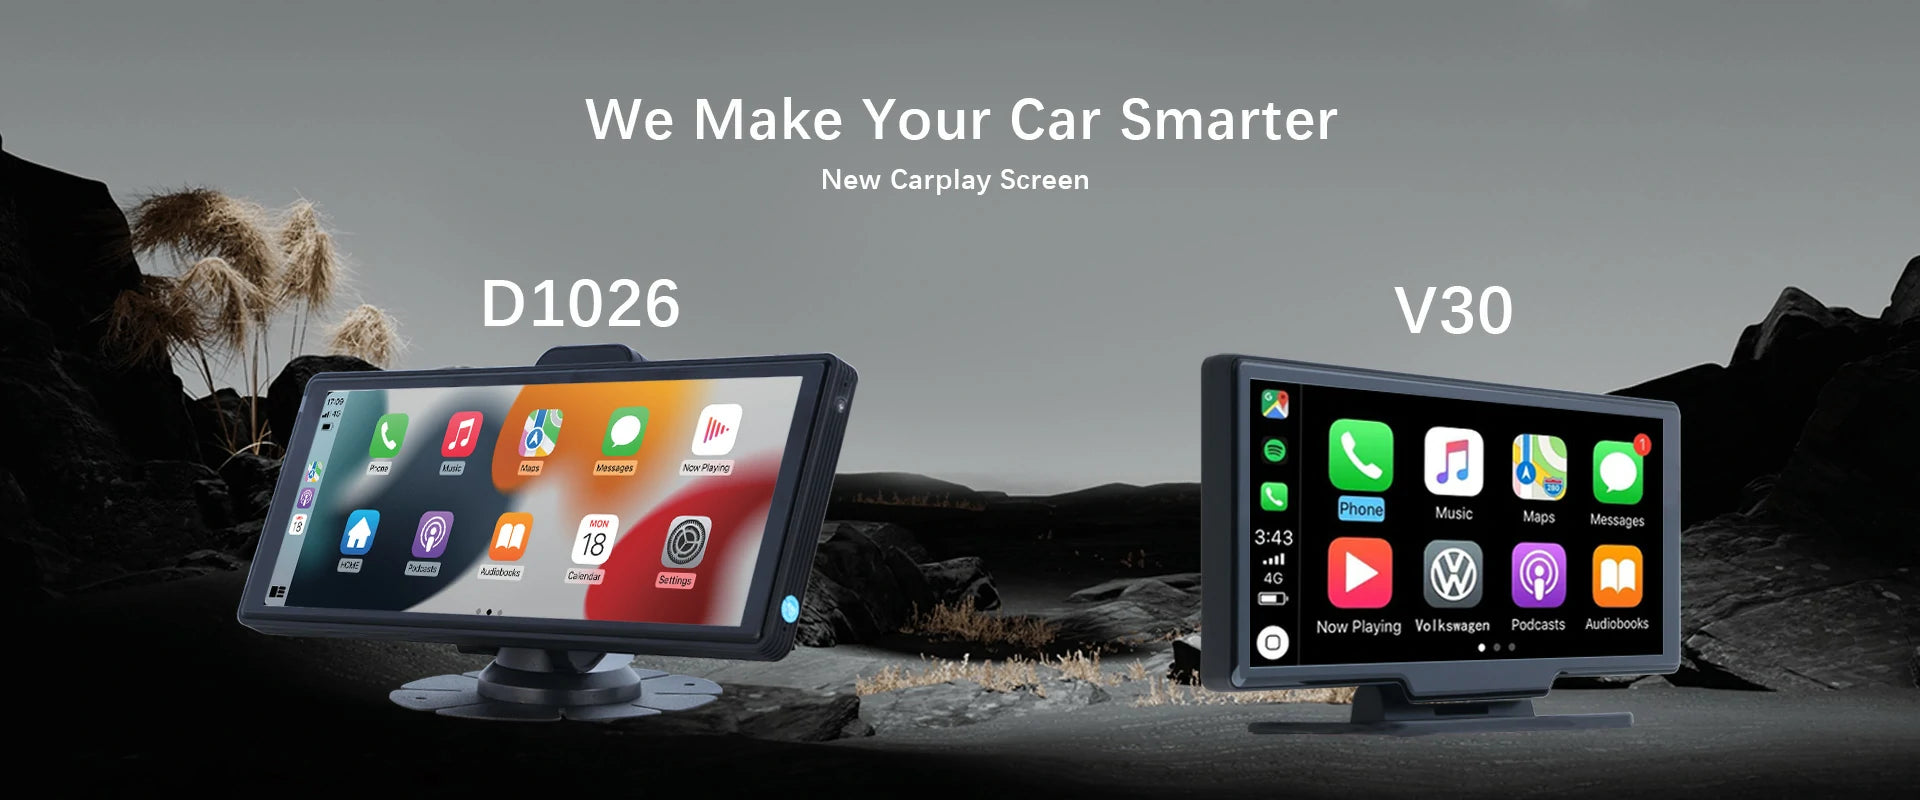 carplay-screen-dash-cam-make-your-car-smarter